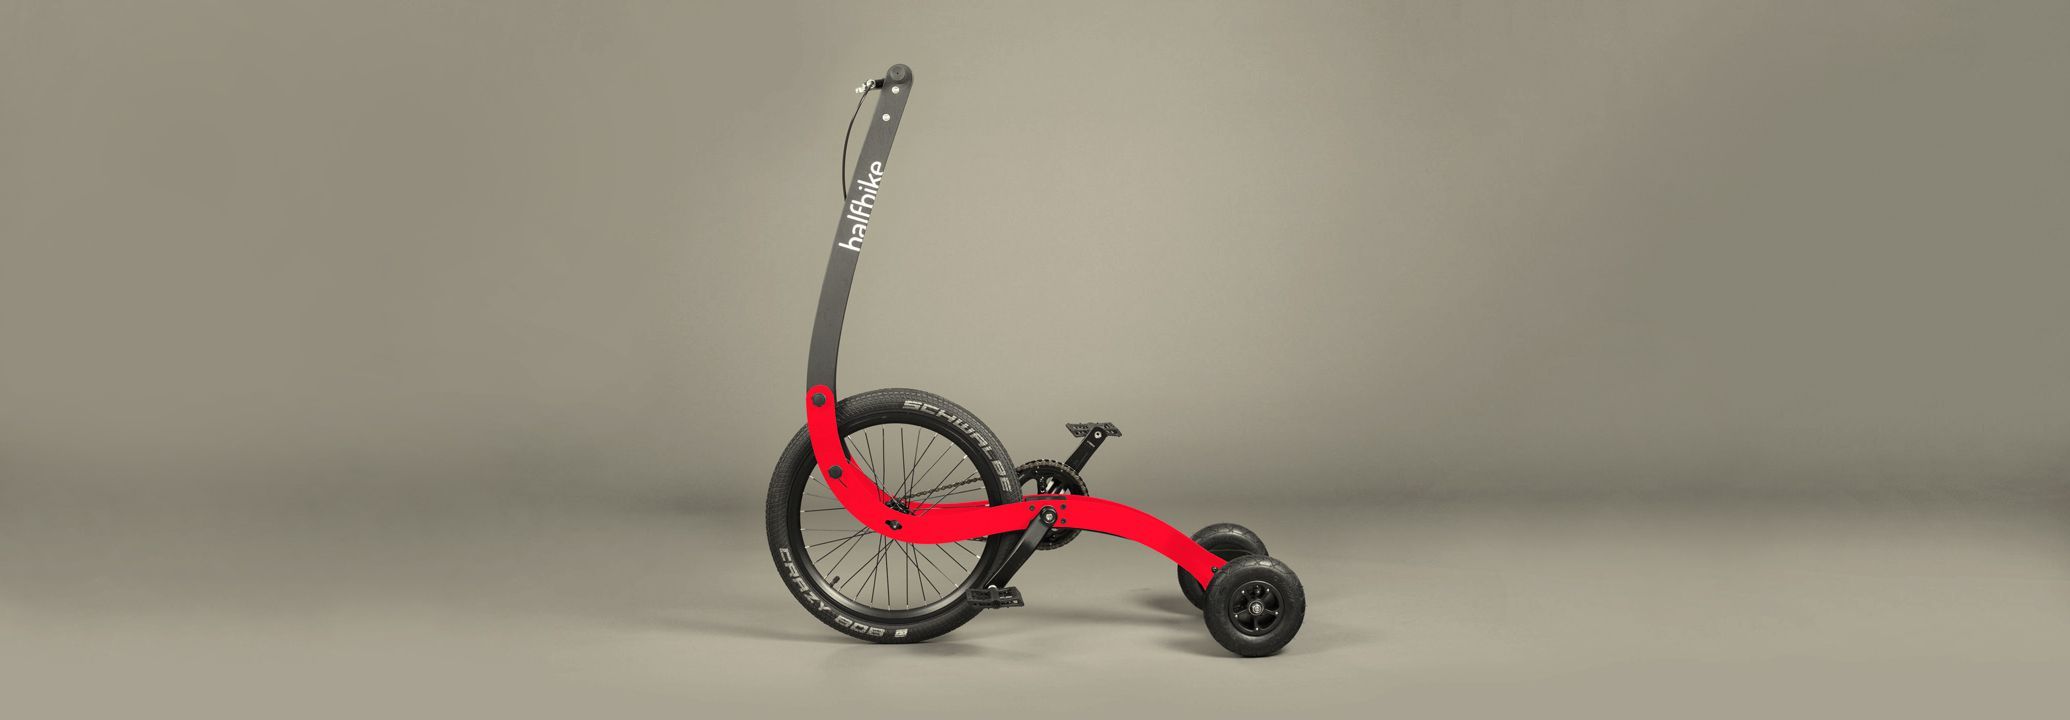 outdoor elliptical bike